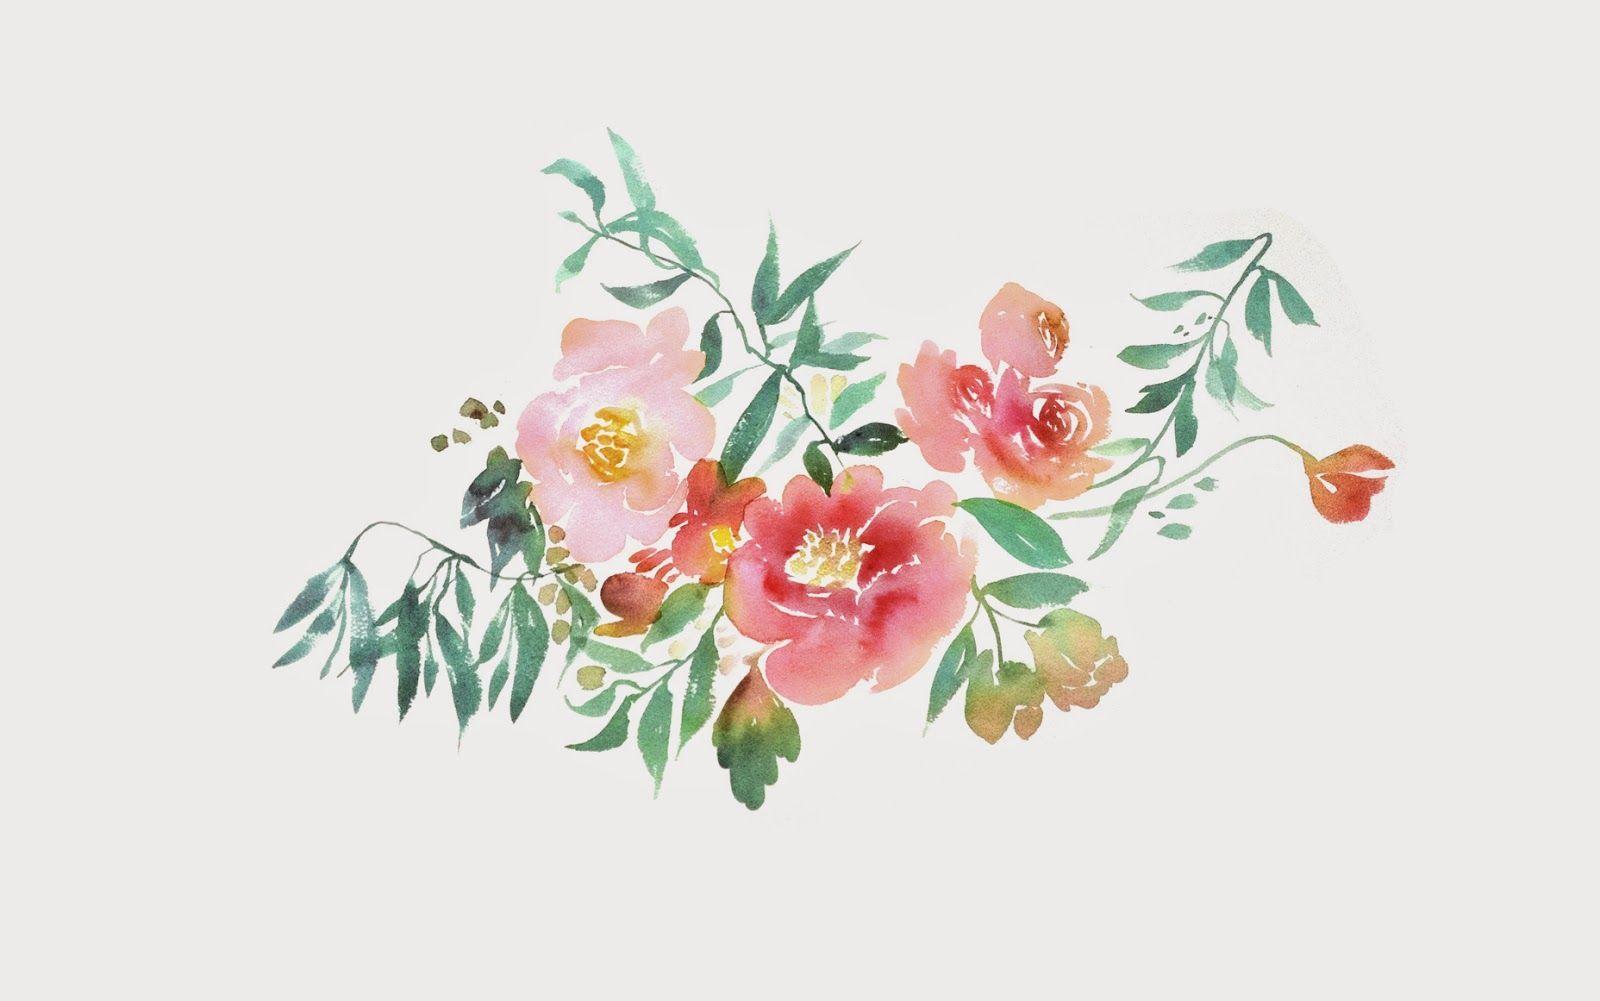 Aesthetic Flowers Desktop Wallpapers Top Free Aesthetic Flowers